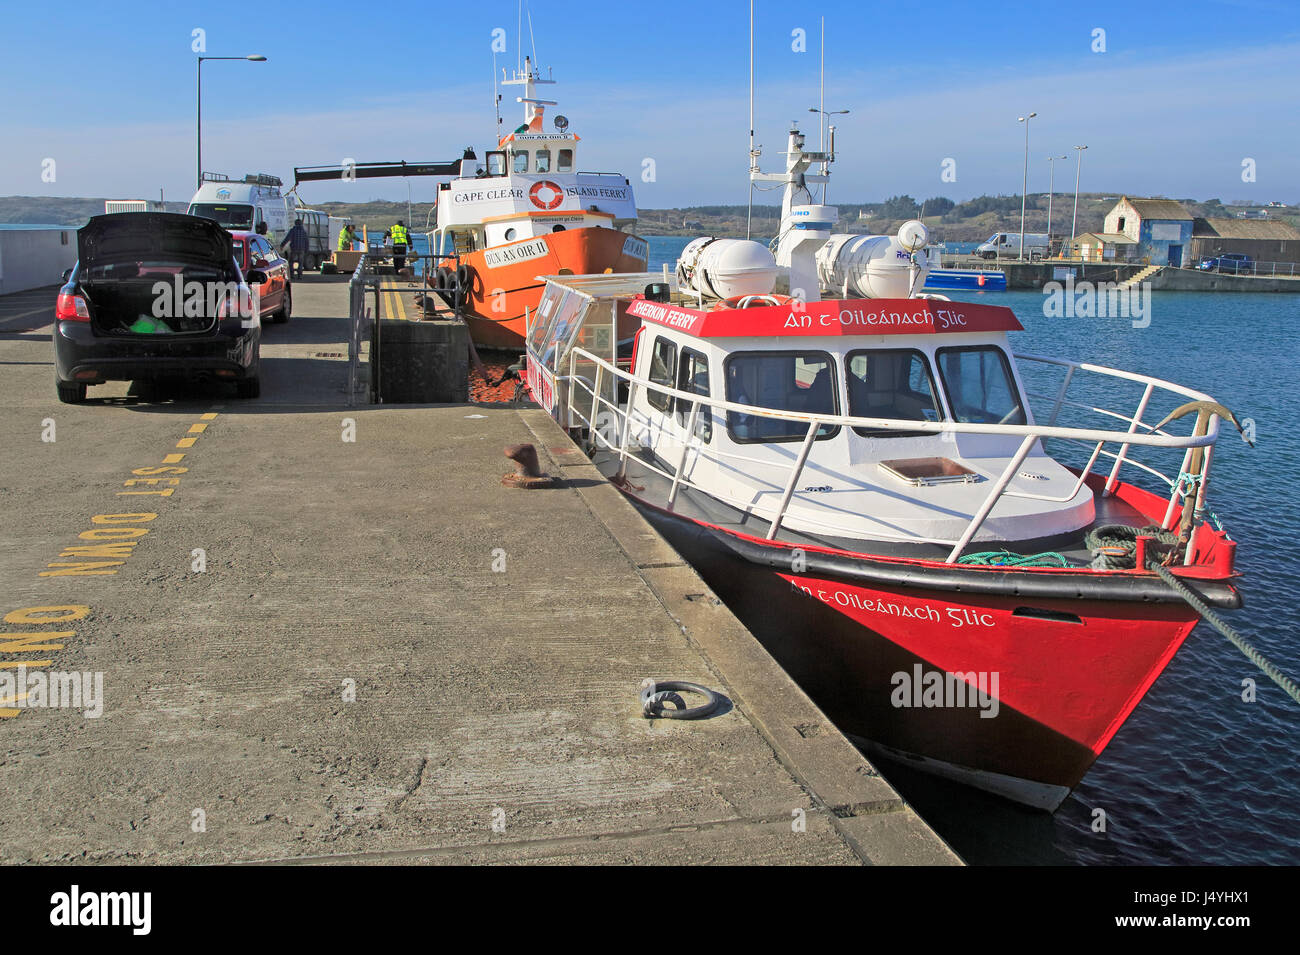 Boote im Hafen, Fähre, Baltimore, Grafschaft-Korken, Irland, Republik Irland Stockfoto